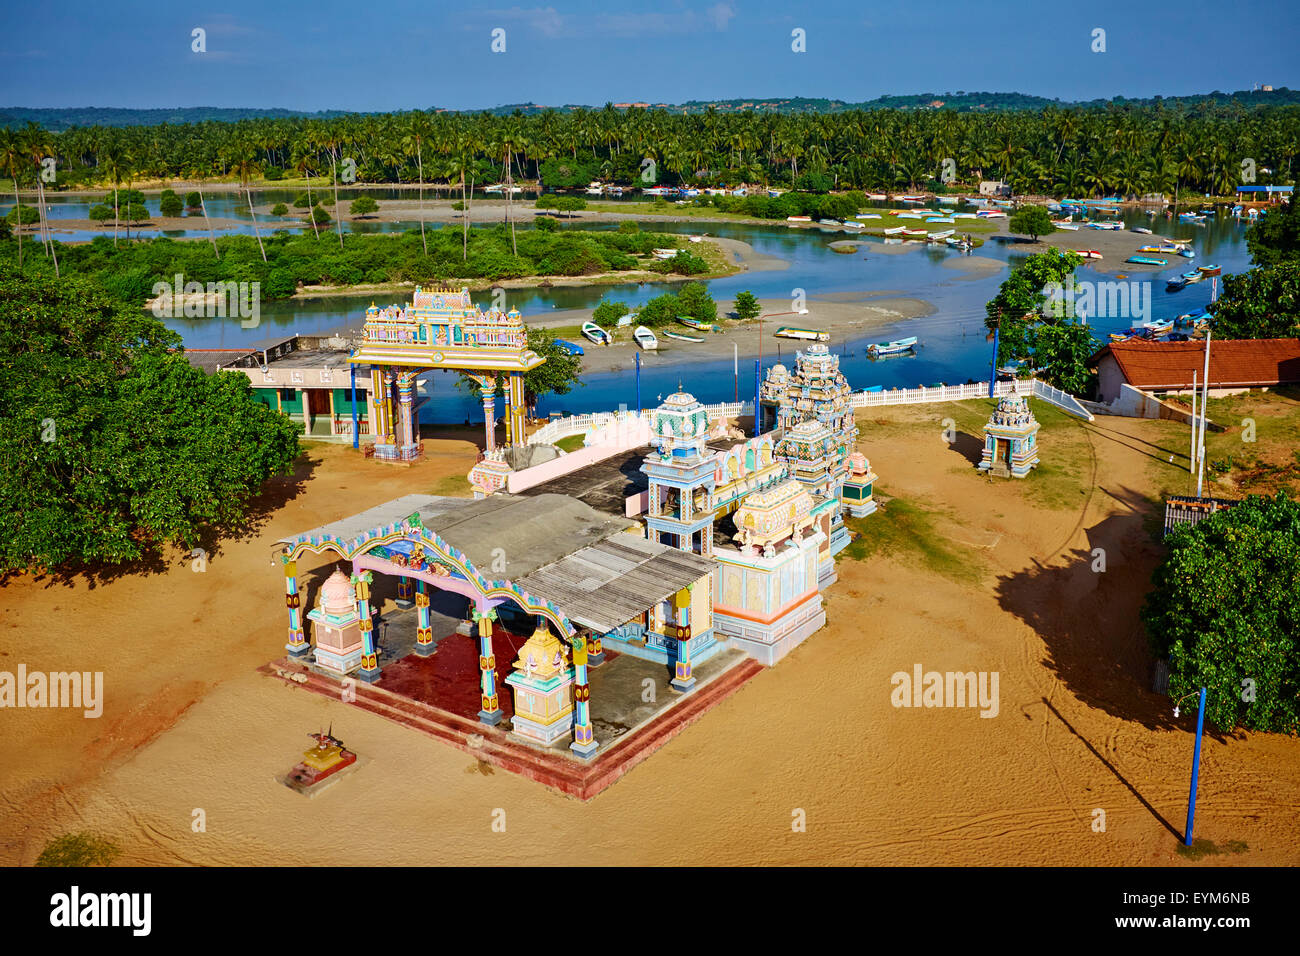 Sri Lanka, Ceylan, Province de l'Est, la Côte Est, Trincomalee, il Muthumariamunam Kovil, temple hindou au bord de l'océan, vue aérienne Banque D'Images